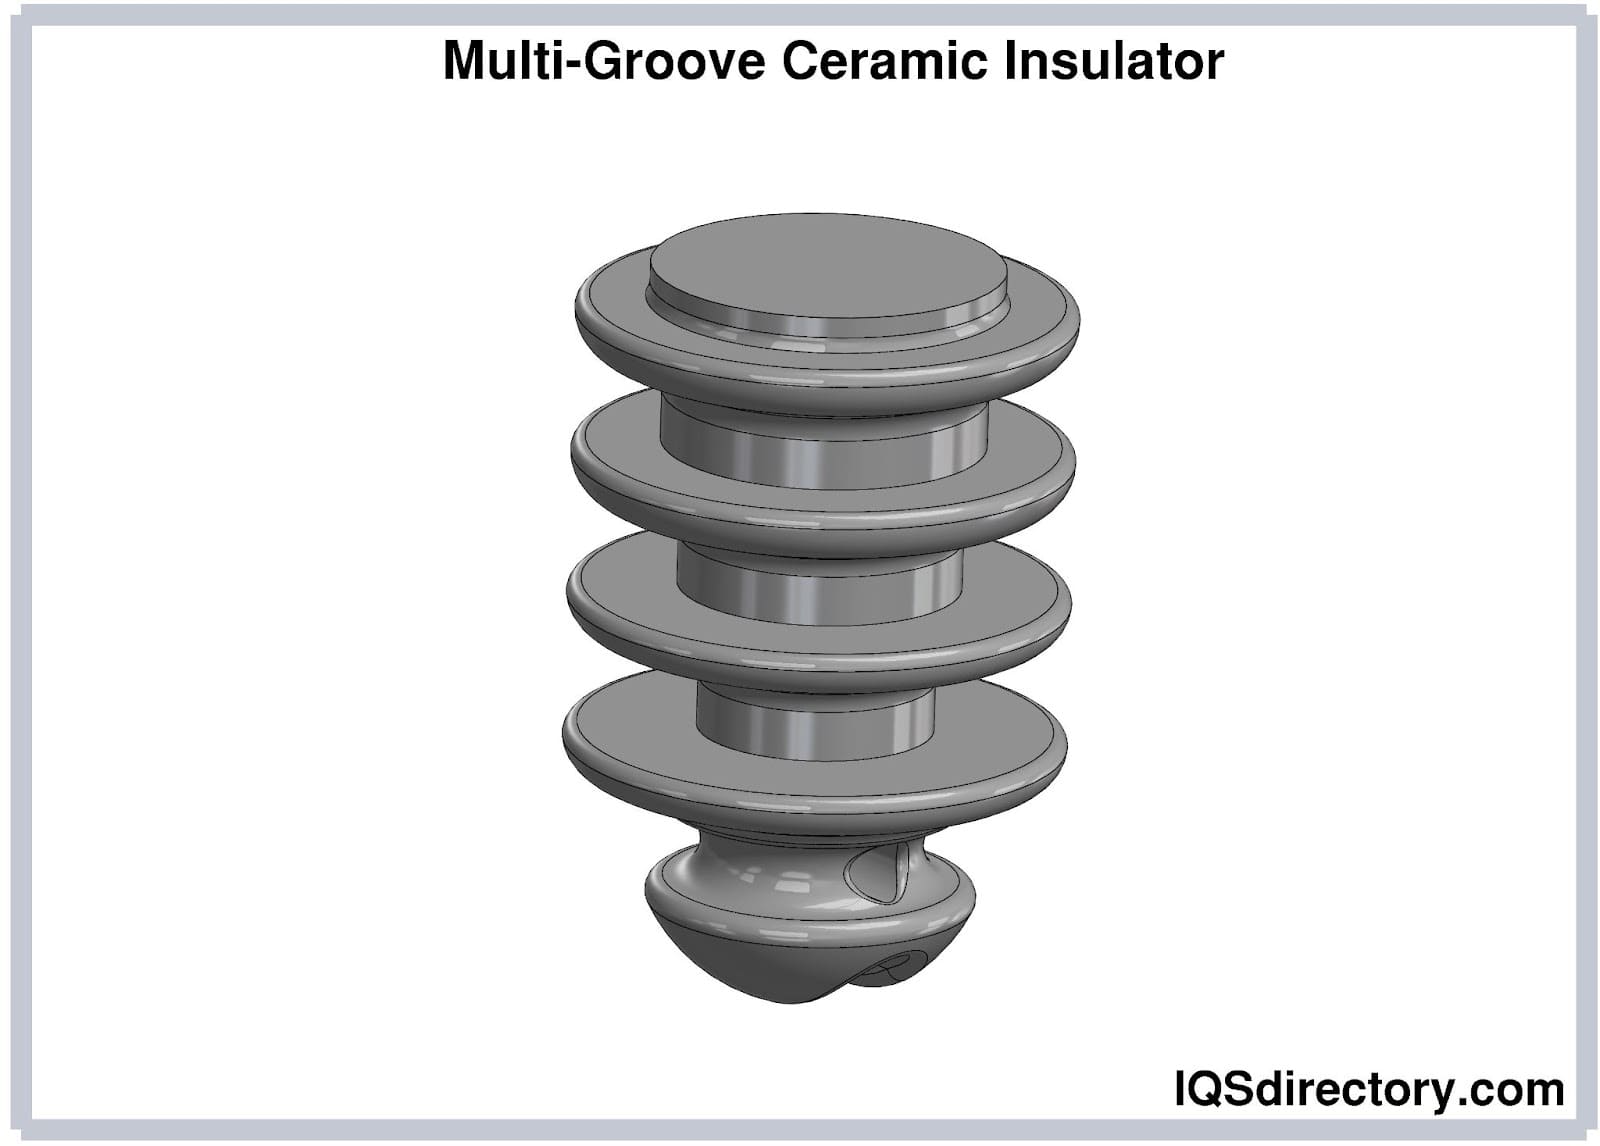 Multi-Groove Ceramic Insulator